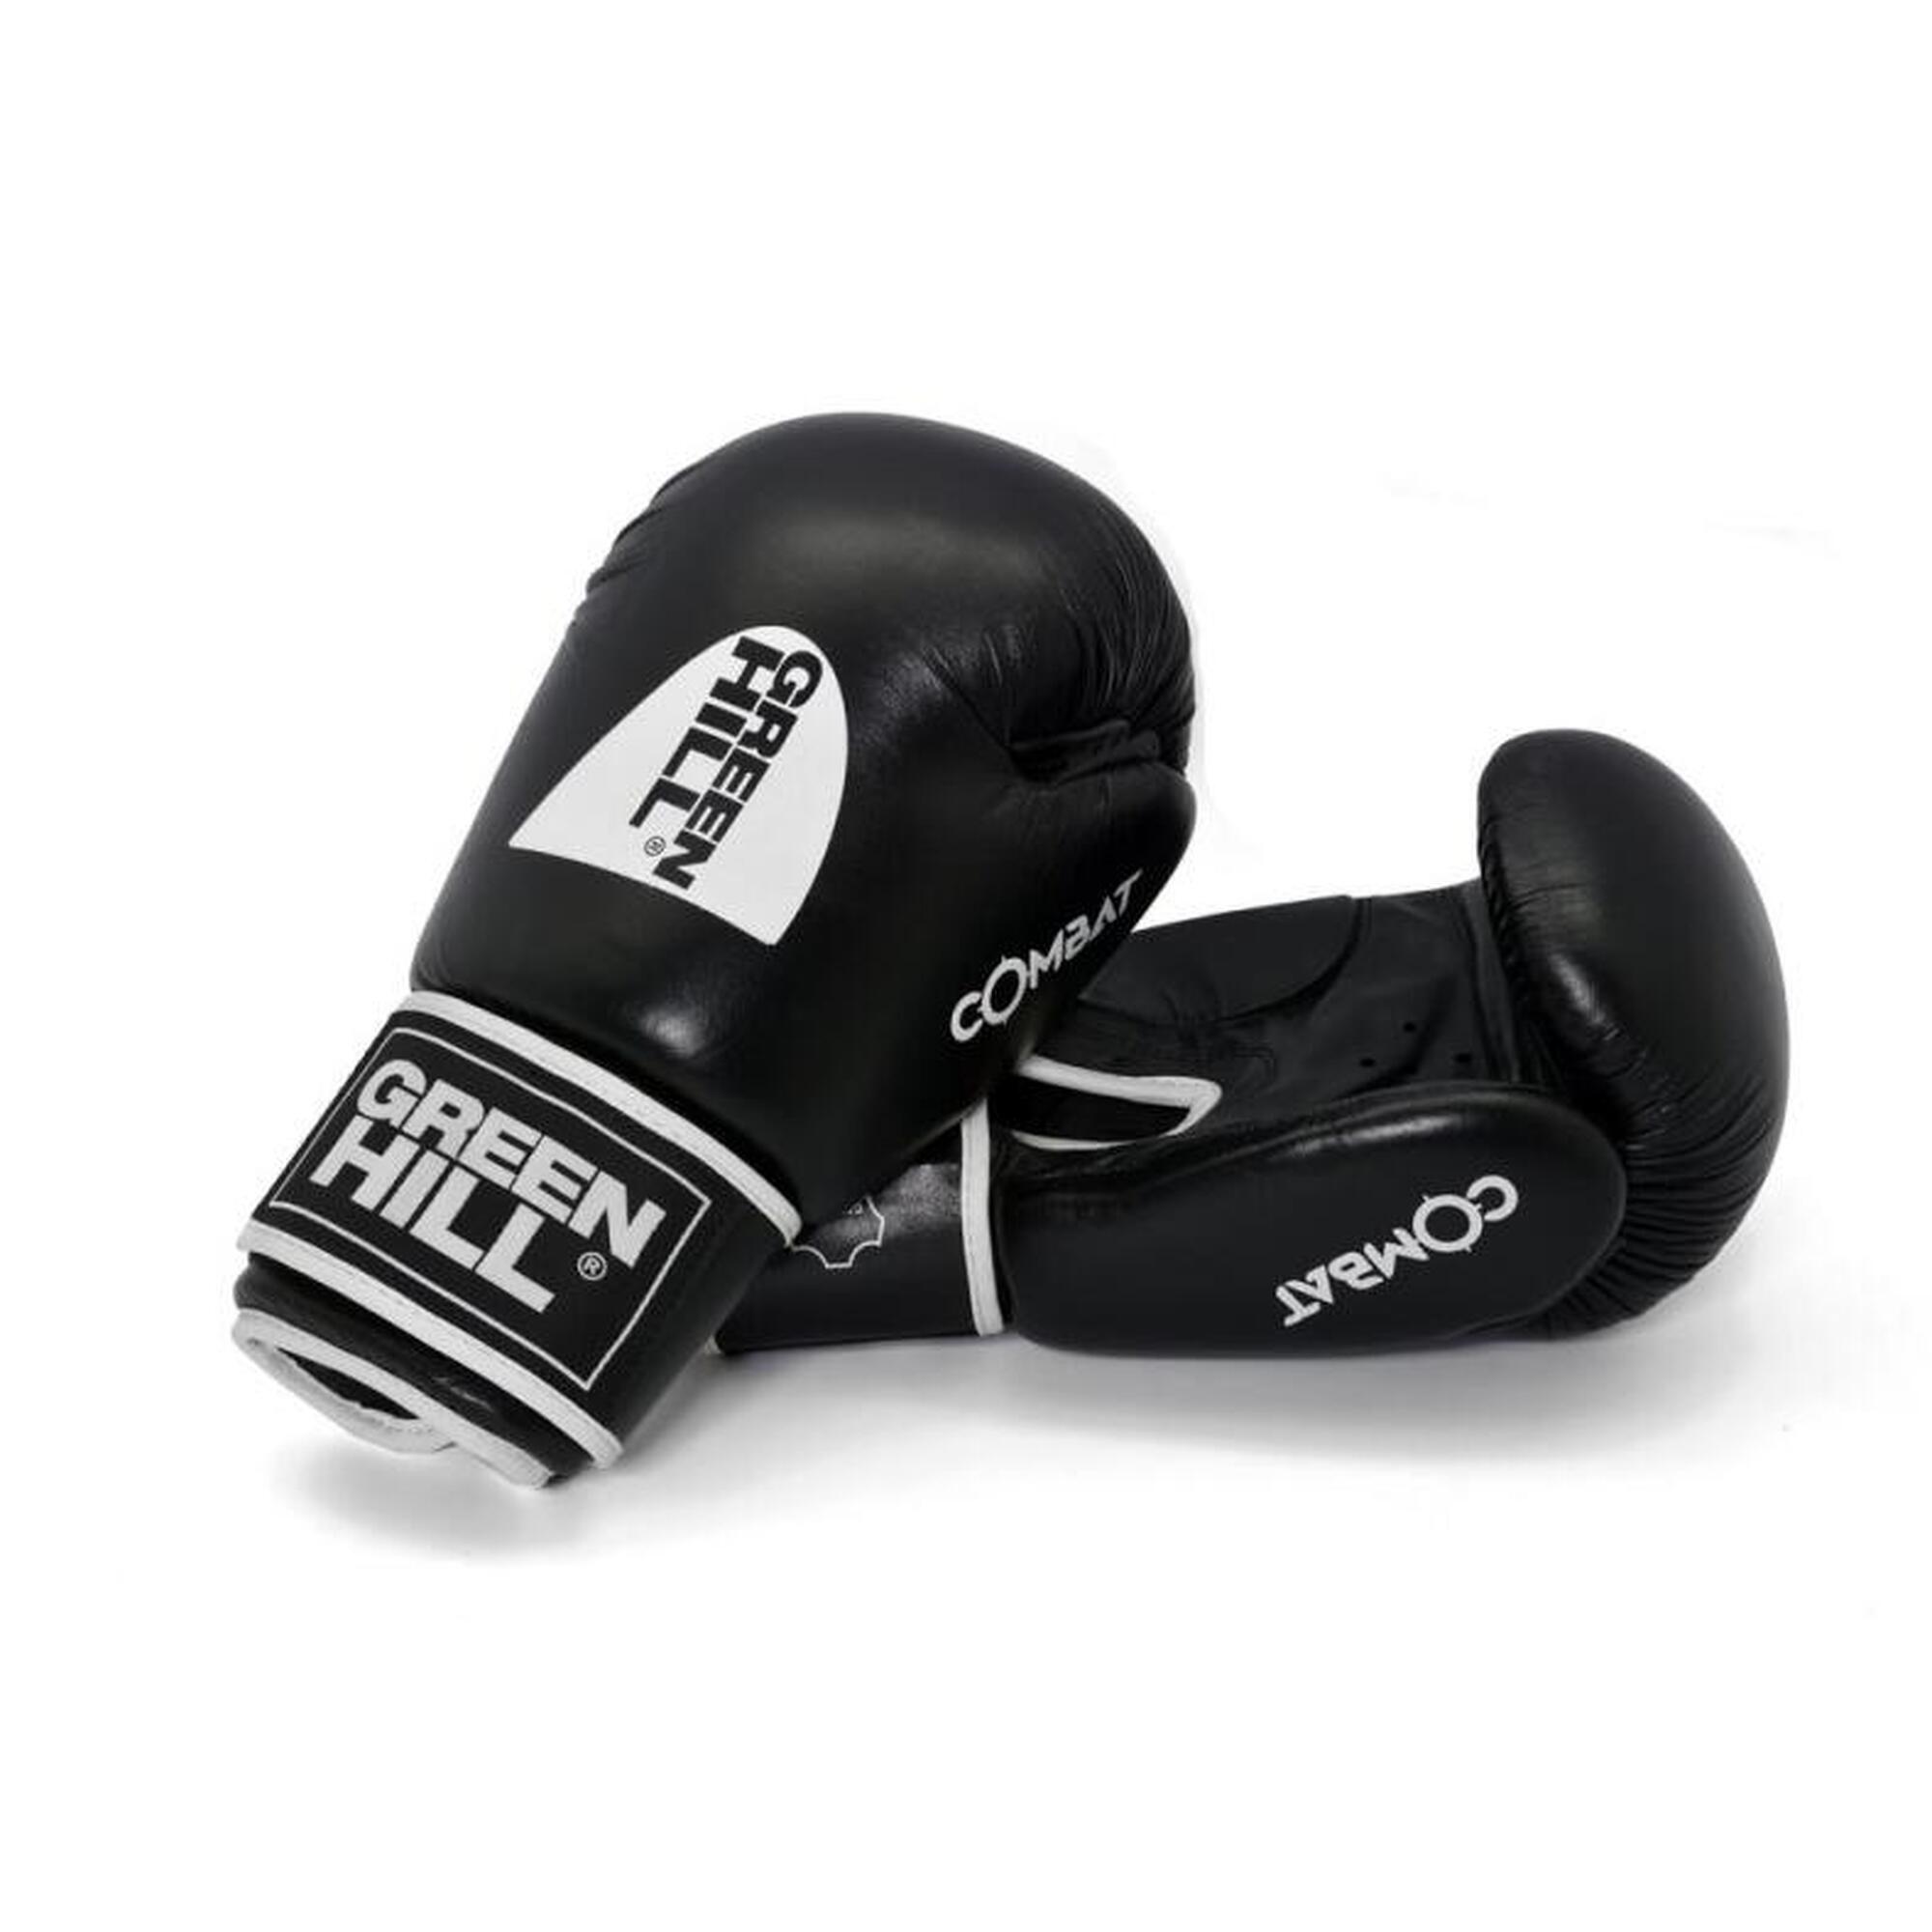 Боксерские перчатки Benlee Sugar Deluxe 16 oz чёрно-красные, черный перчатки боксерские boybo basic к з 8 oz цв синий